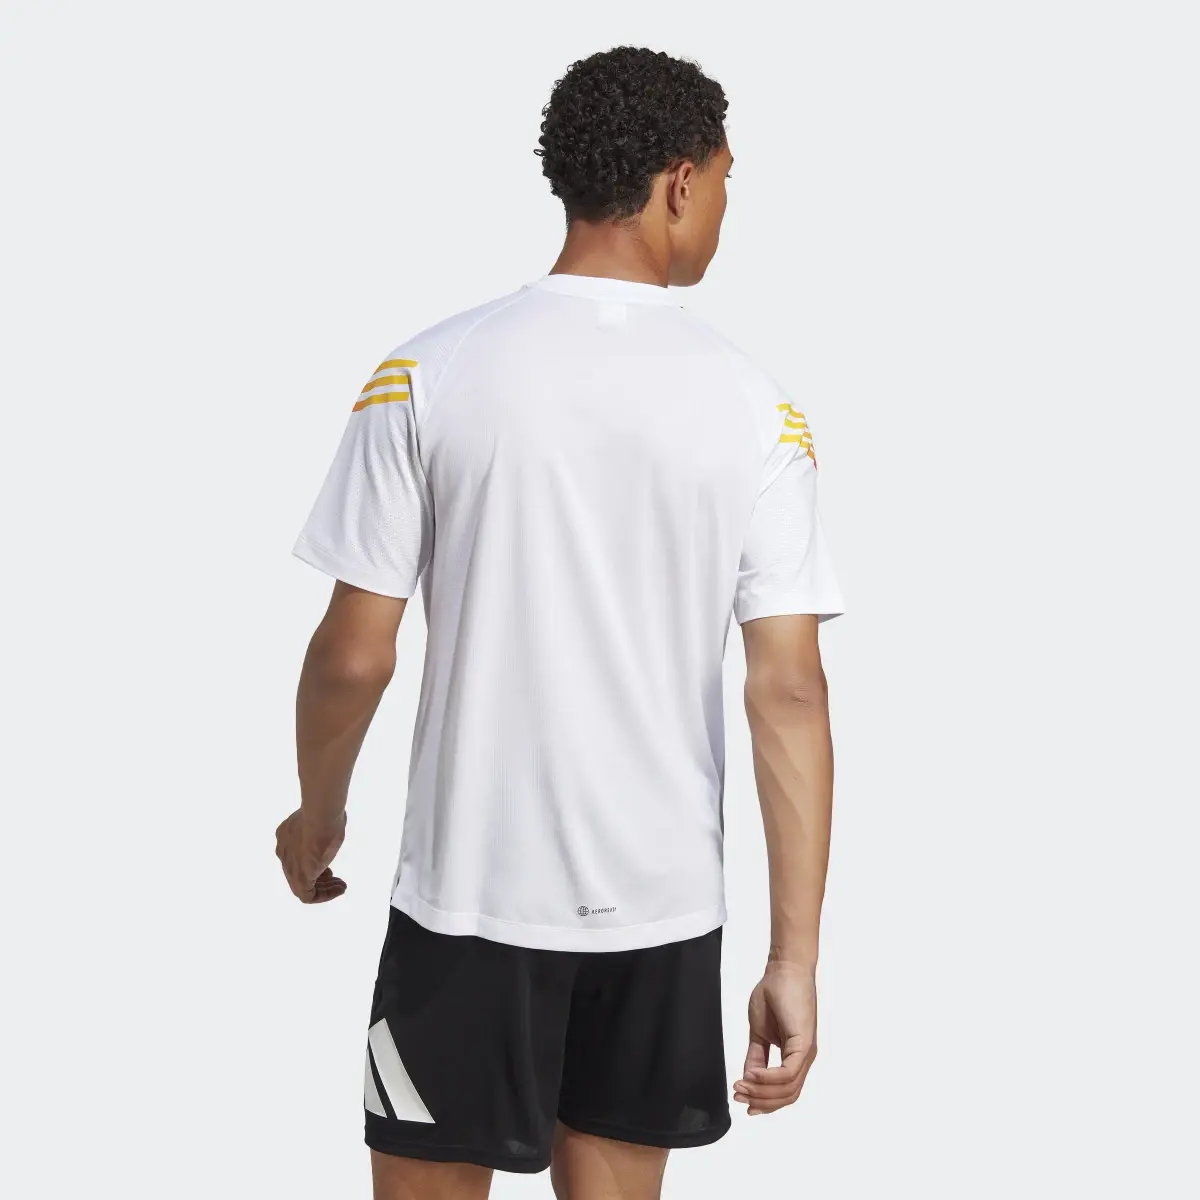 Adidas Train Icons 3-Stripes Training Tişörtü. 3